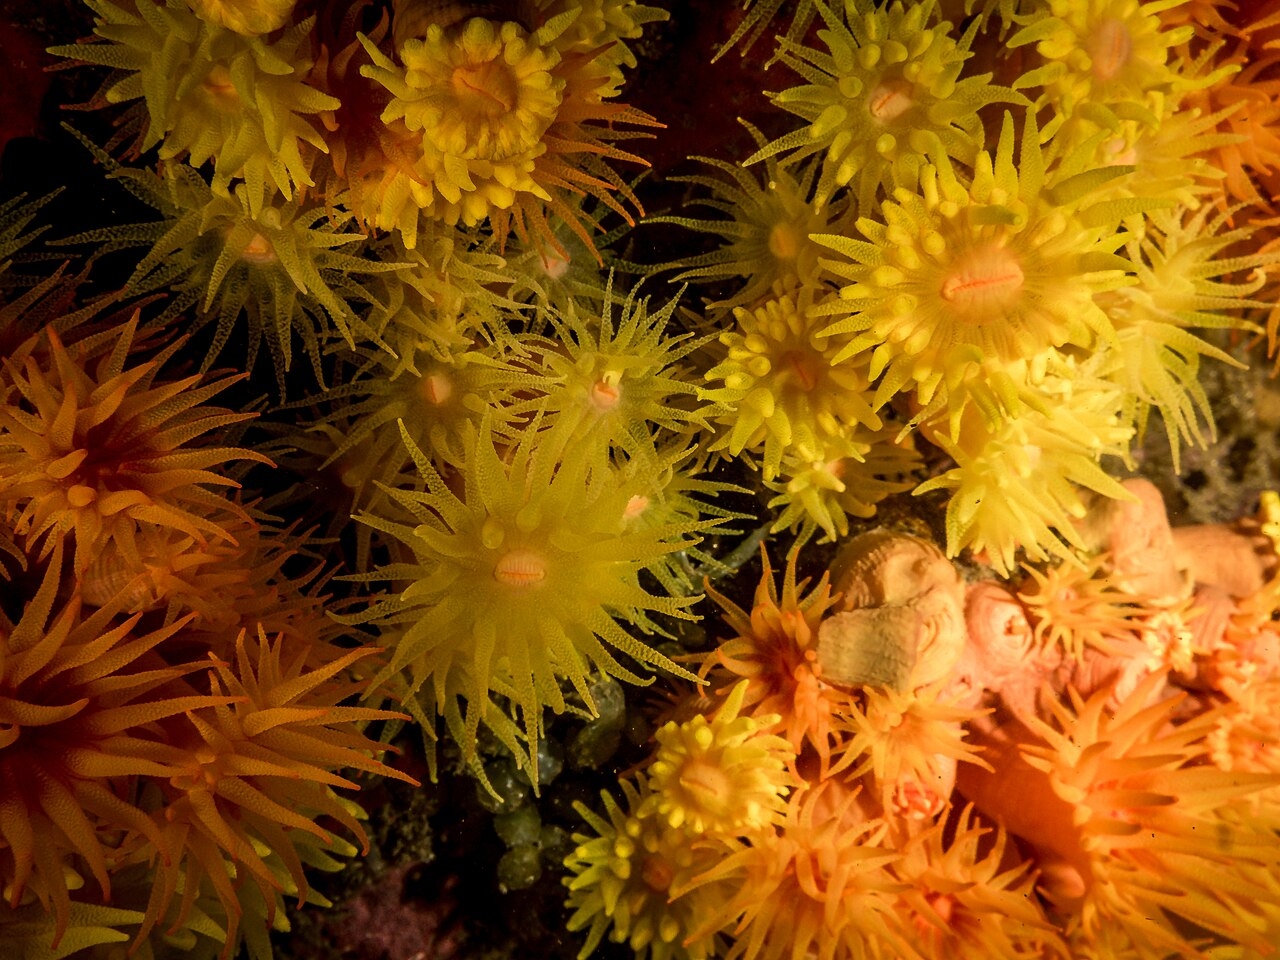 Pesquisadores observaram que as colônias de coral-sol podem liberar larvas em decorrência do estresse causado pela remoção. Reprodução: Flipar